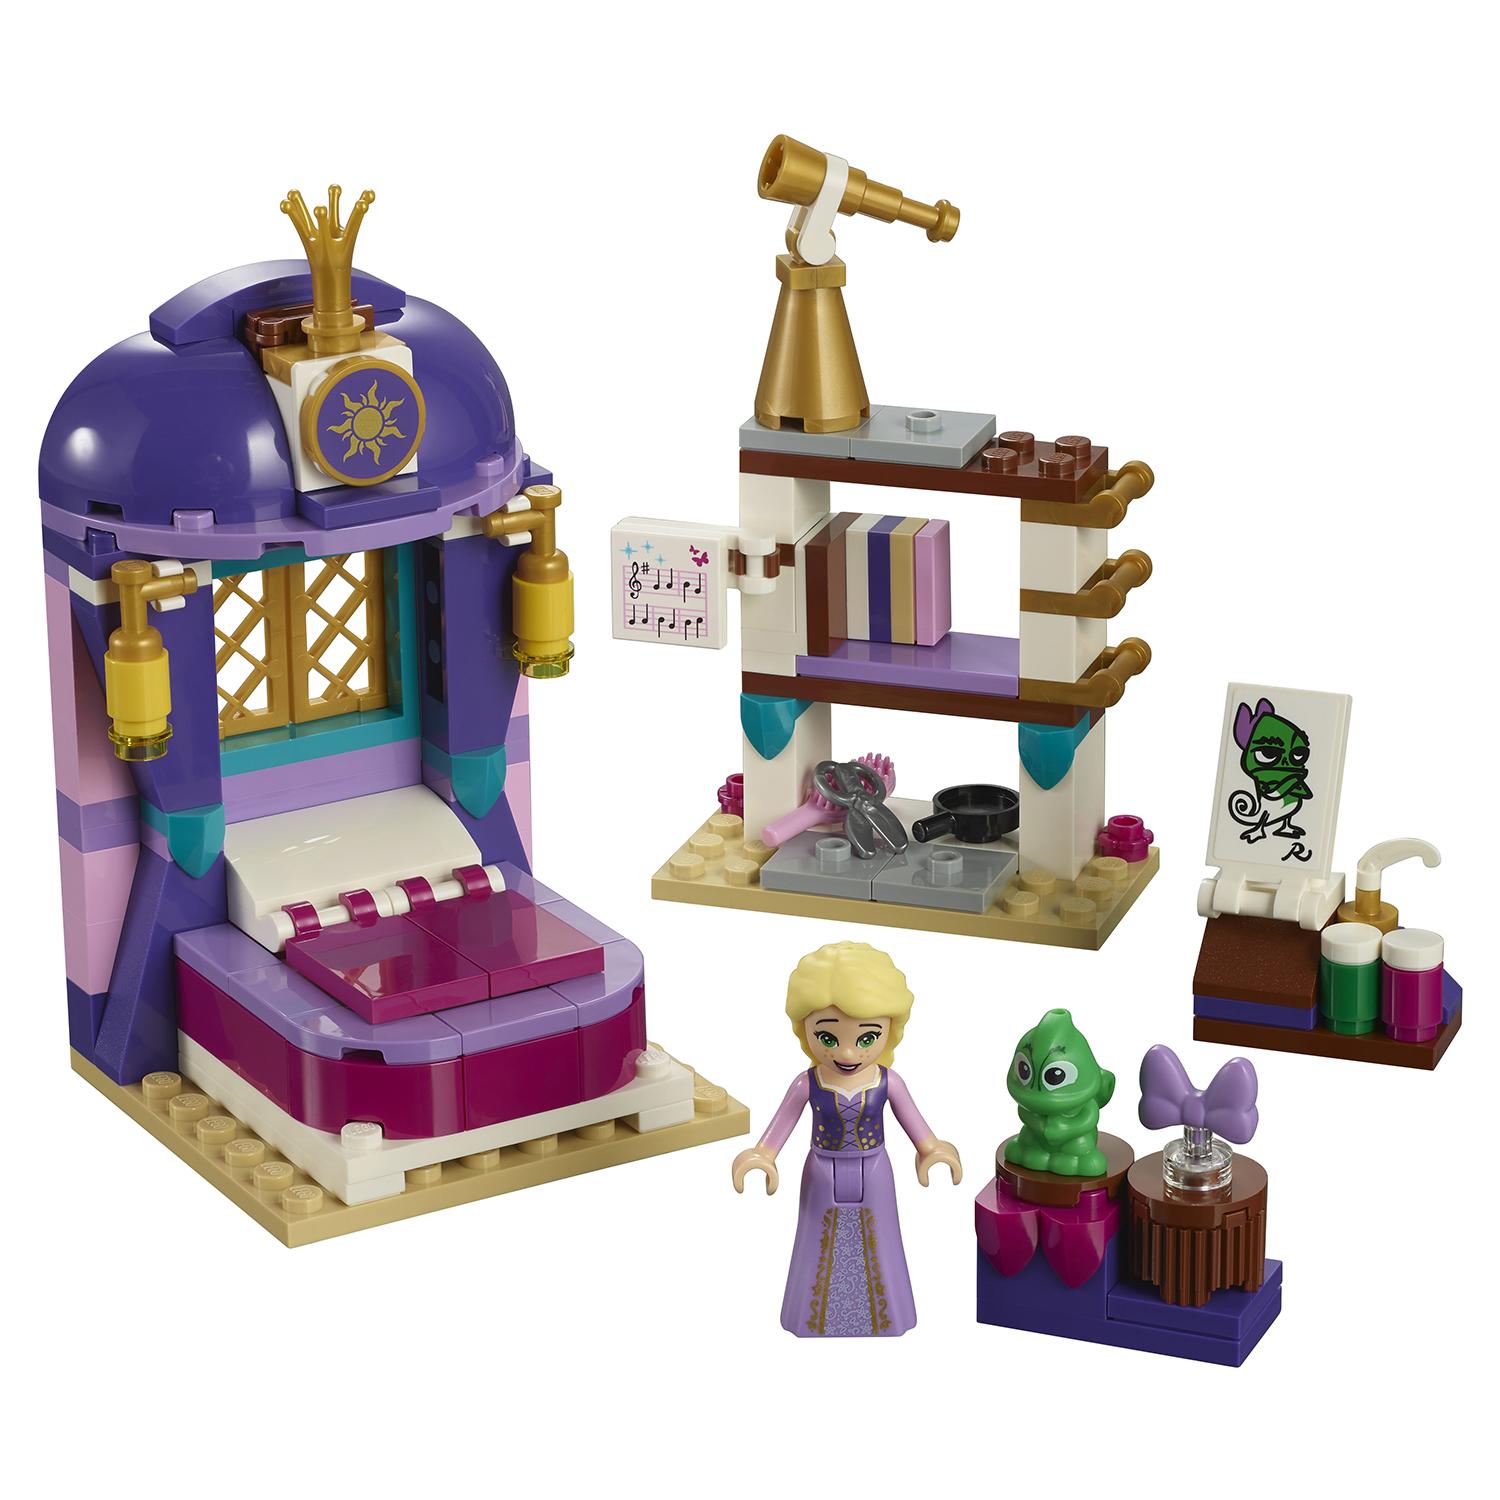 Lego Disney Princess 41156 Спальня Рапунцель в замке